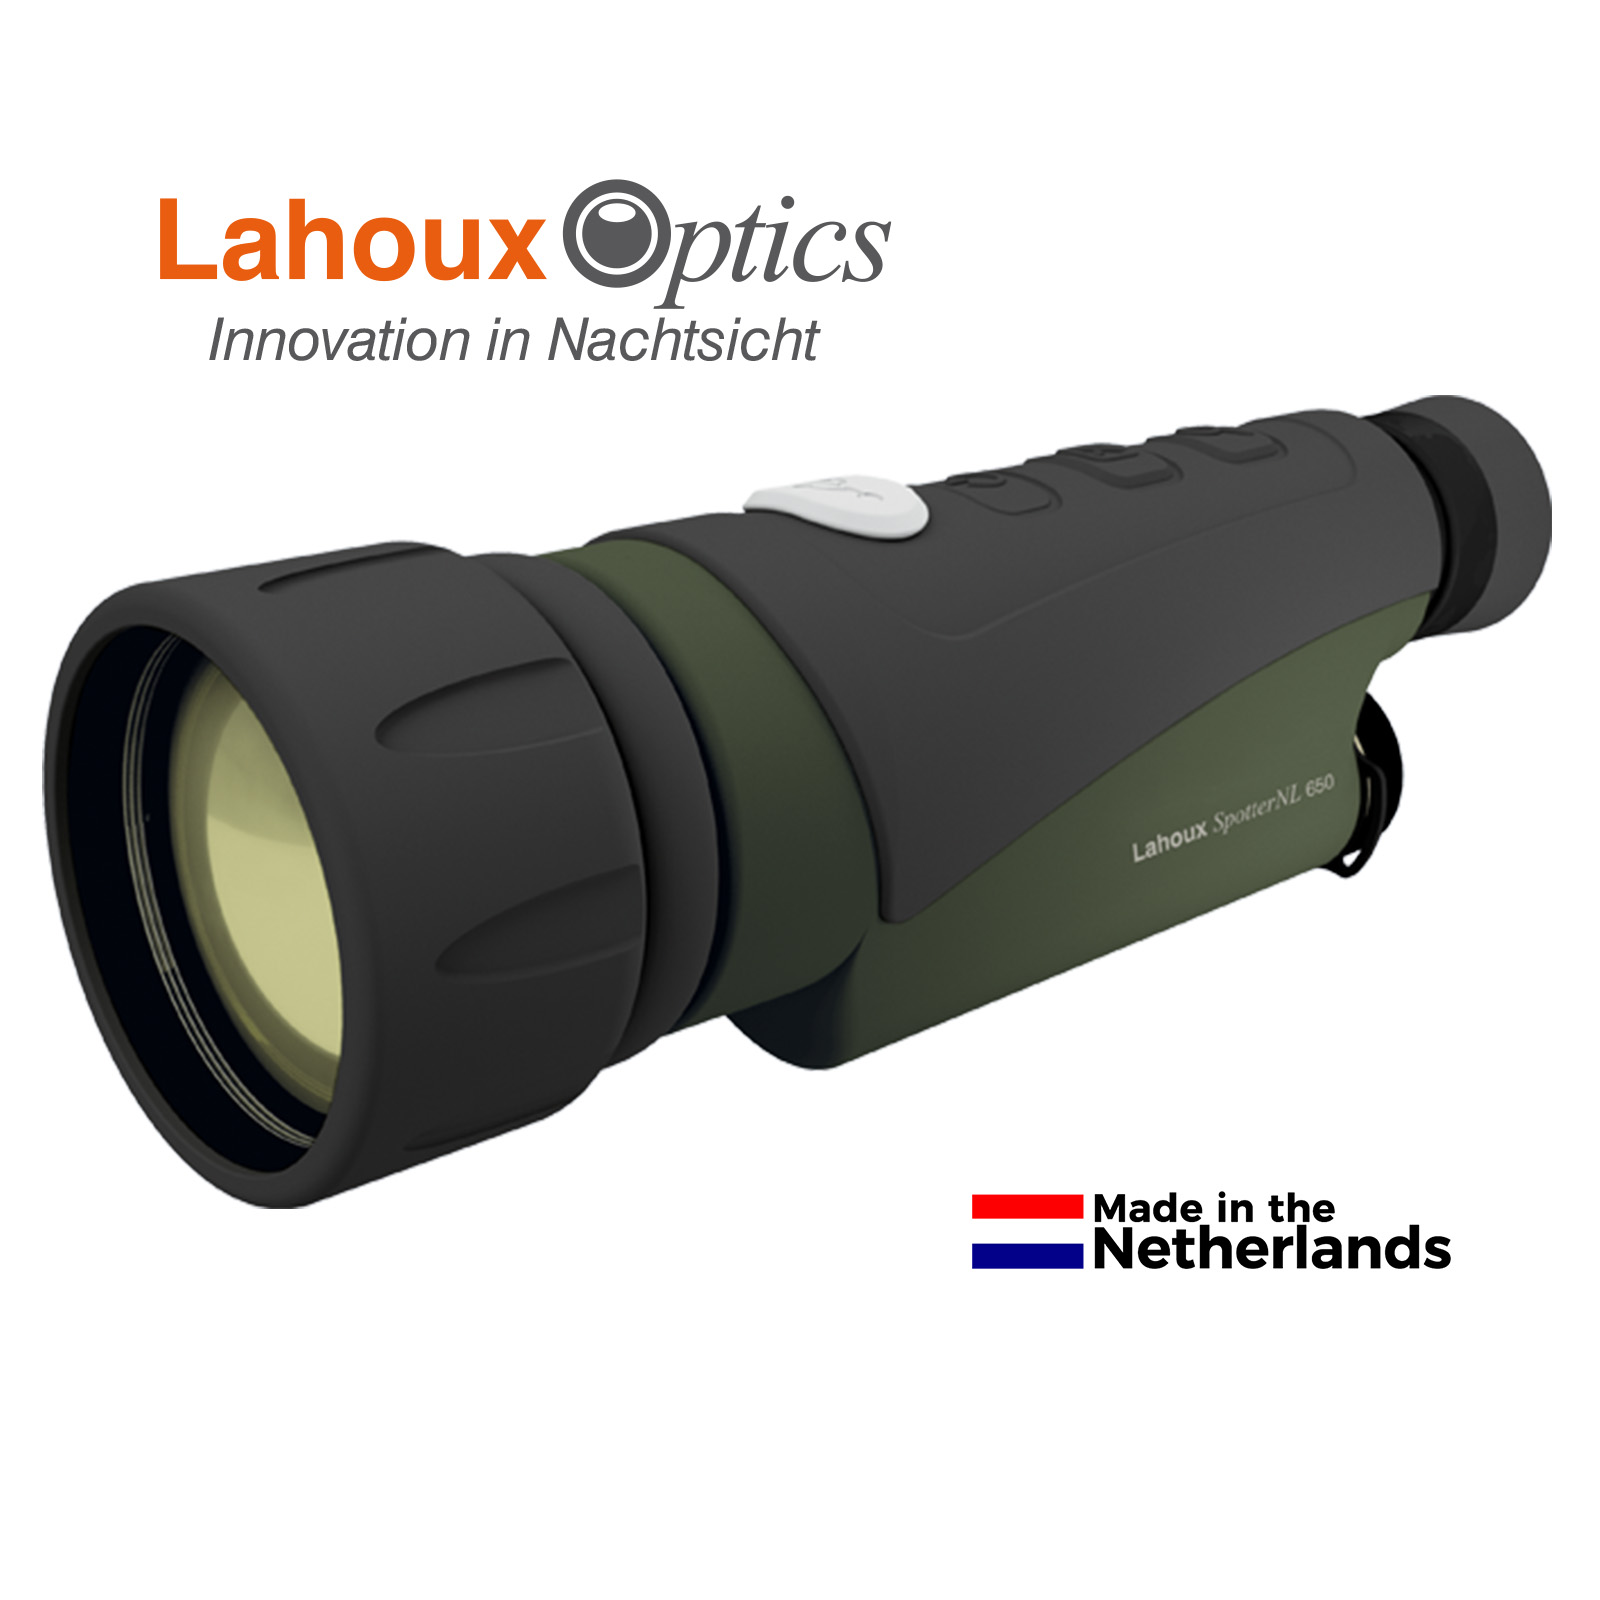 LAHOUX Spotter NL 650 von Lahoux